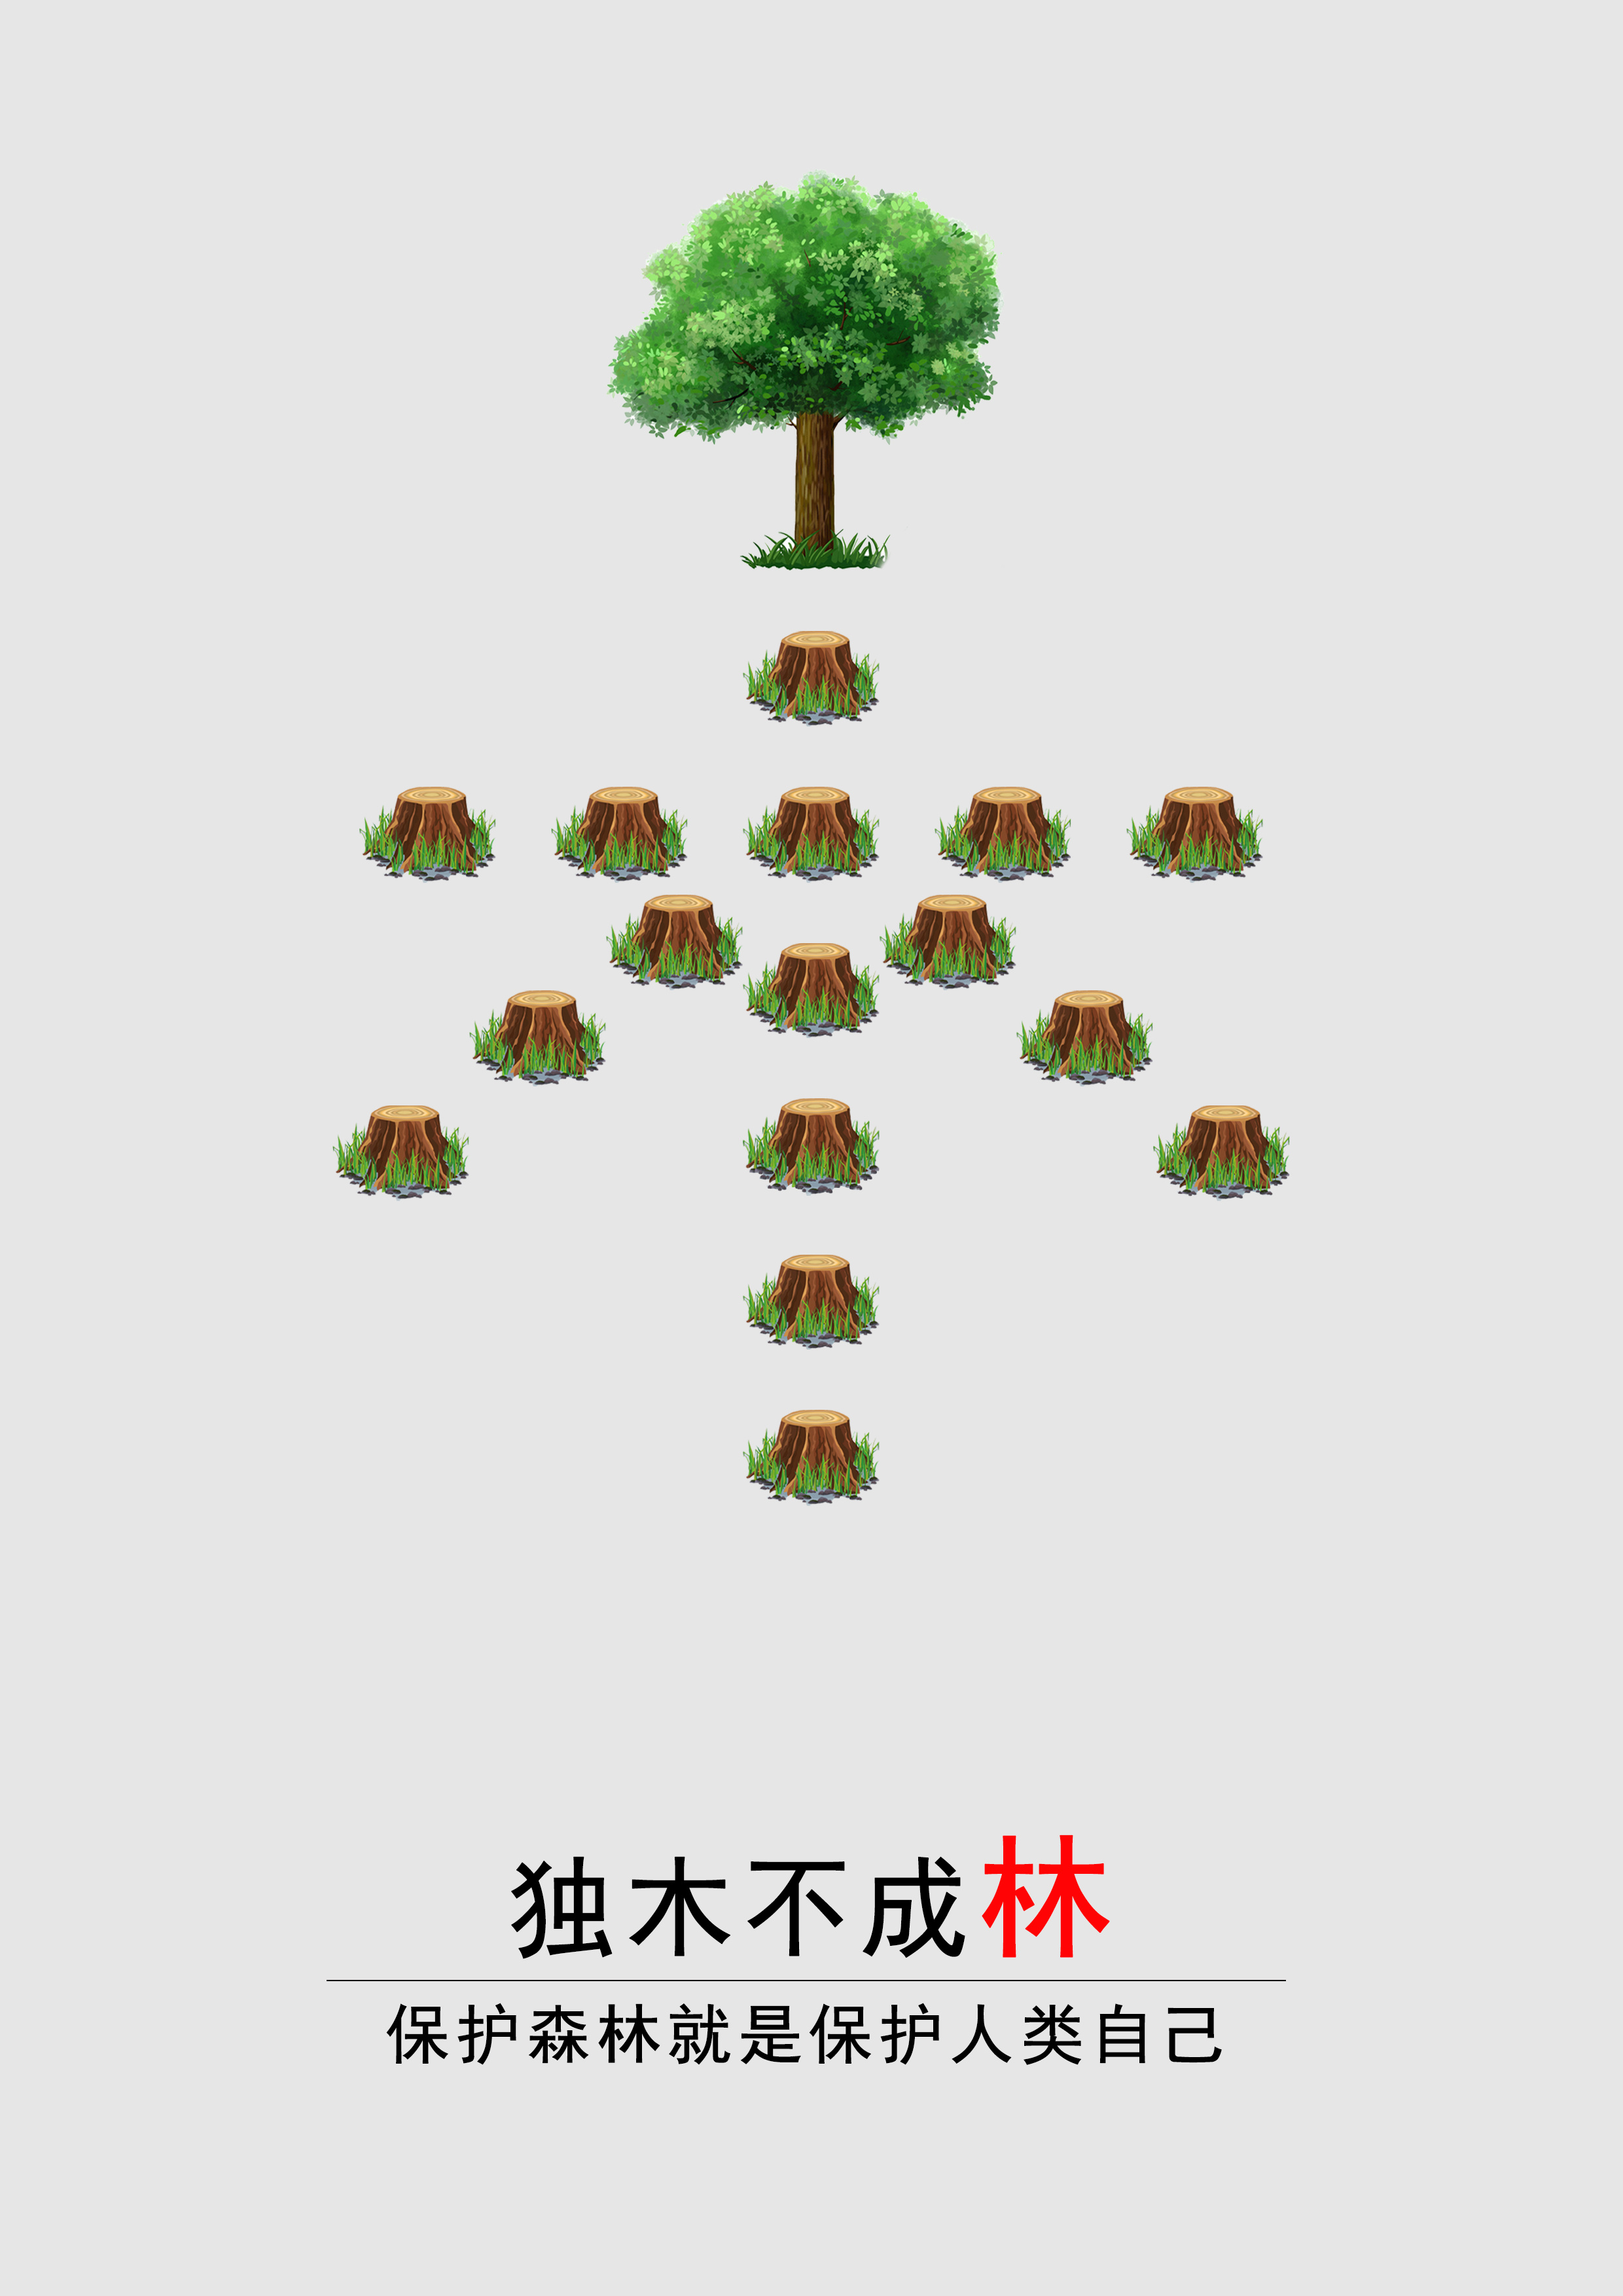 保护森林创意海报